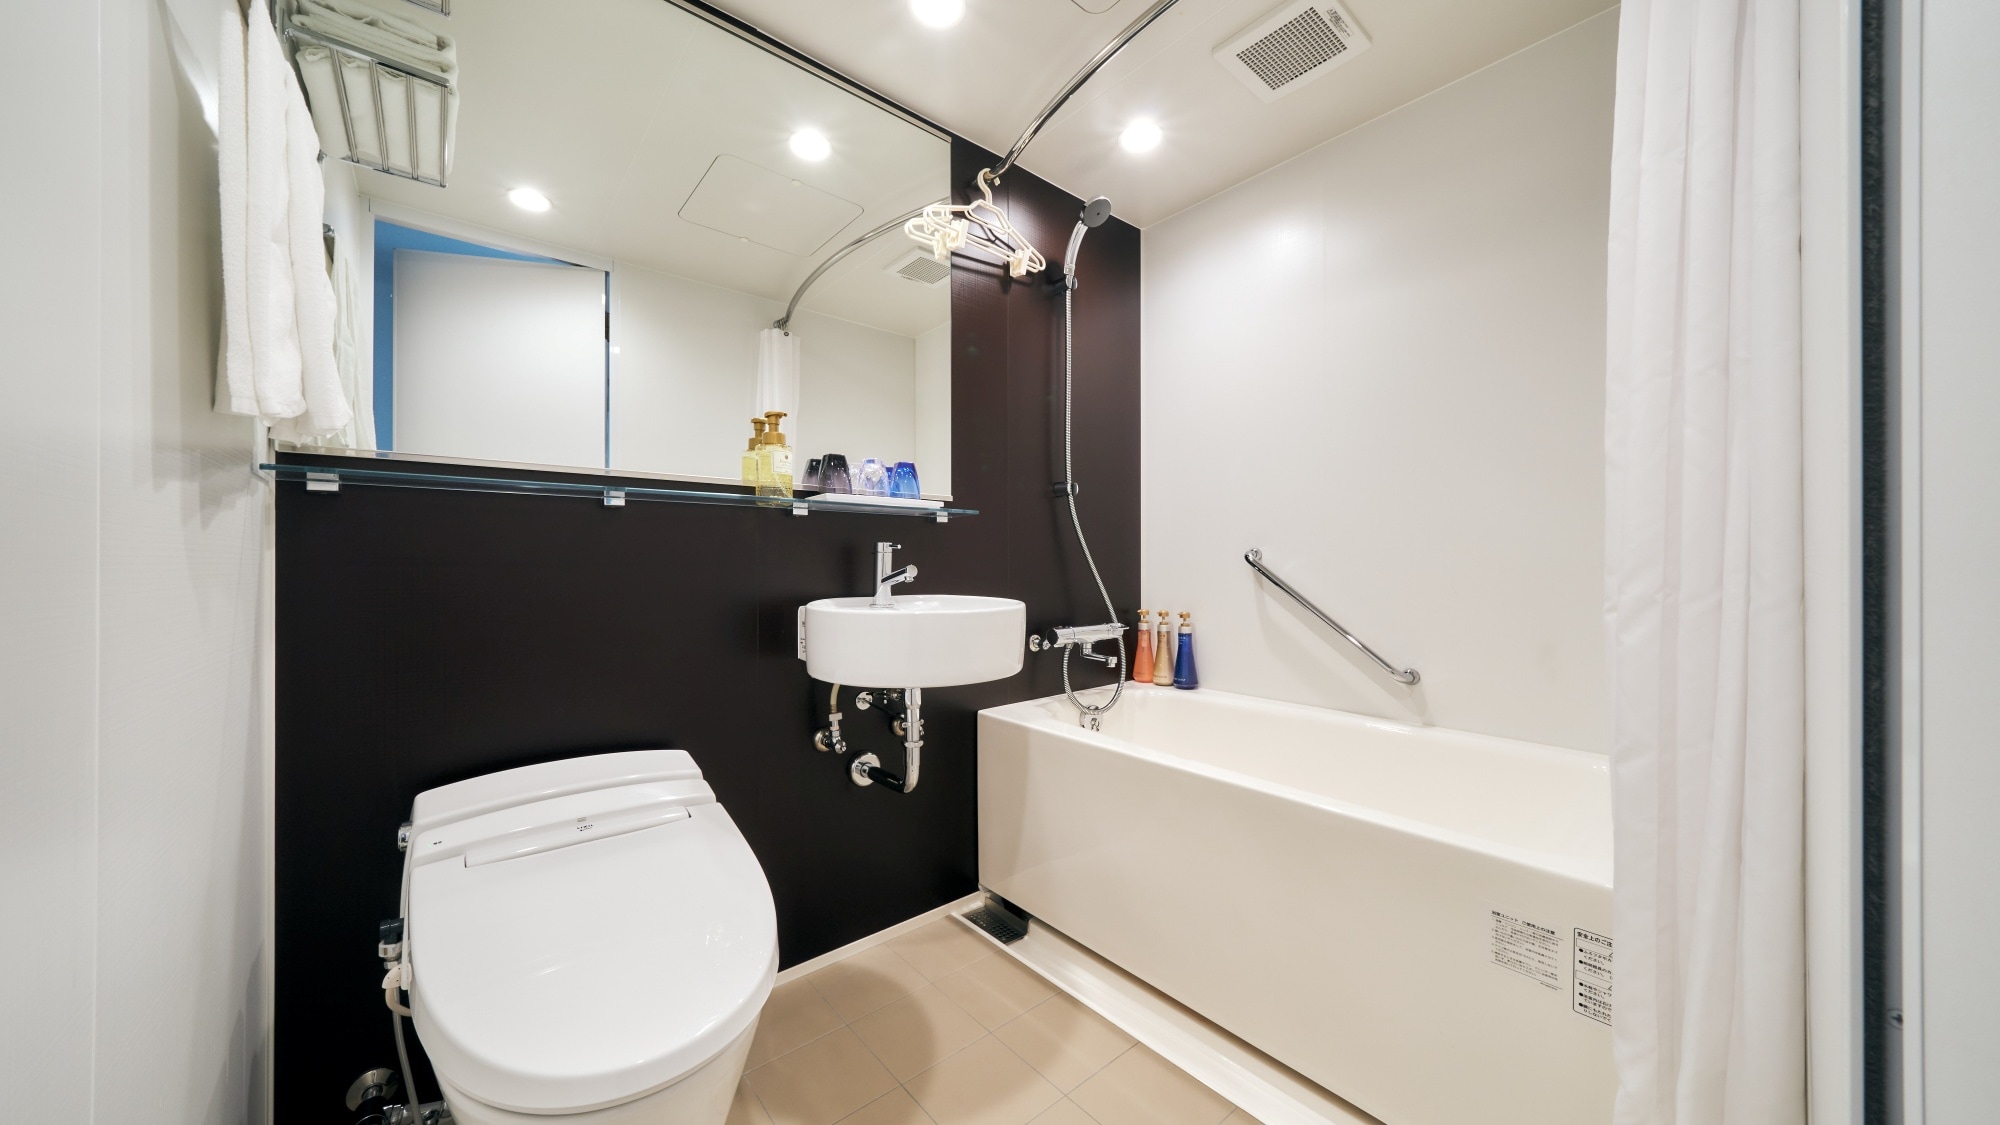 ≪別館・浴室≫茶色裝飾板、大鏡子、混合水龍頭